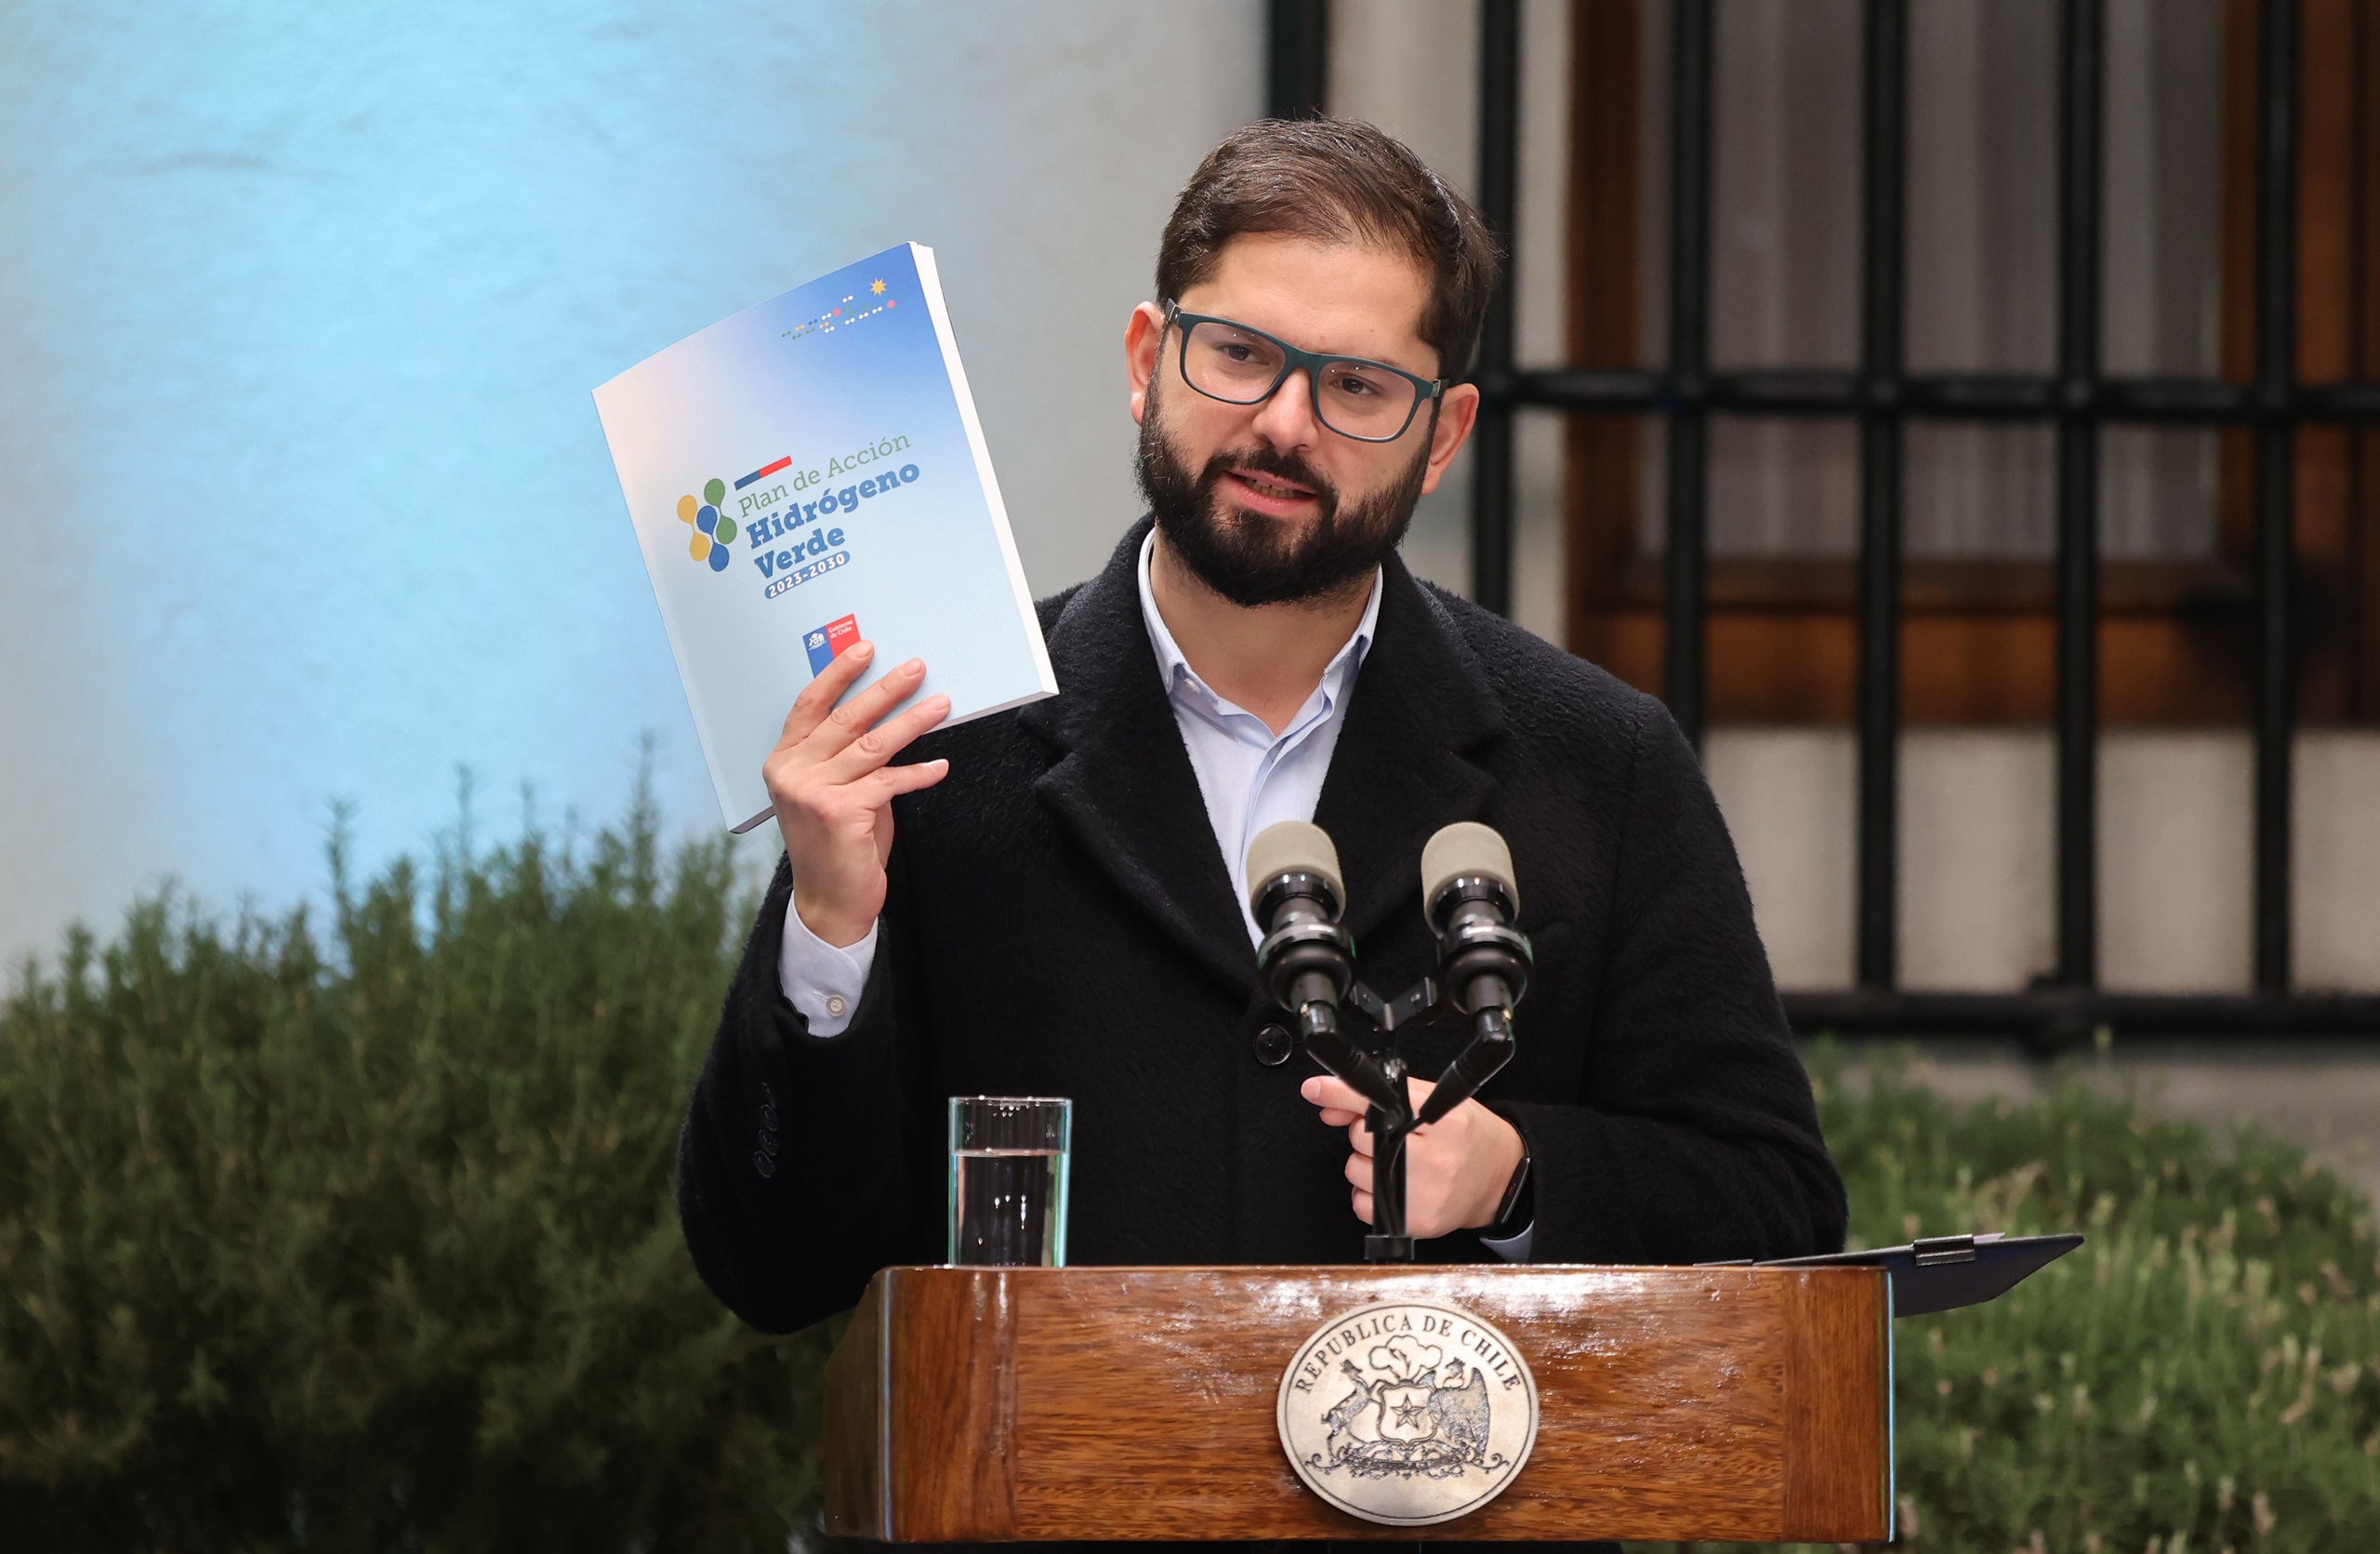 <p>El 2 de mayo, el presidente Gabriel Boric lanzó el Plan de Acción de Hidrógeno Verde de Chile. La nueva estrategia establece el objetivo de que el país produzca el hidrógeno verde más barato del mundo en 2030 (Imagen: <a href="https://flic.kr/p/2pNPfzU">Rodrigo Saenz</a> / <a href="https://flickr.com/people/ministeriodeobraspublicas/">Ministerio de Obras Públicas de Chile</a>, <a href="https://creativecommons.org/licenses/by-nc-sa/2.0/">CC BY-NC-SA</a>)</p>